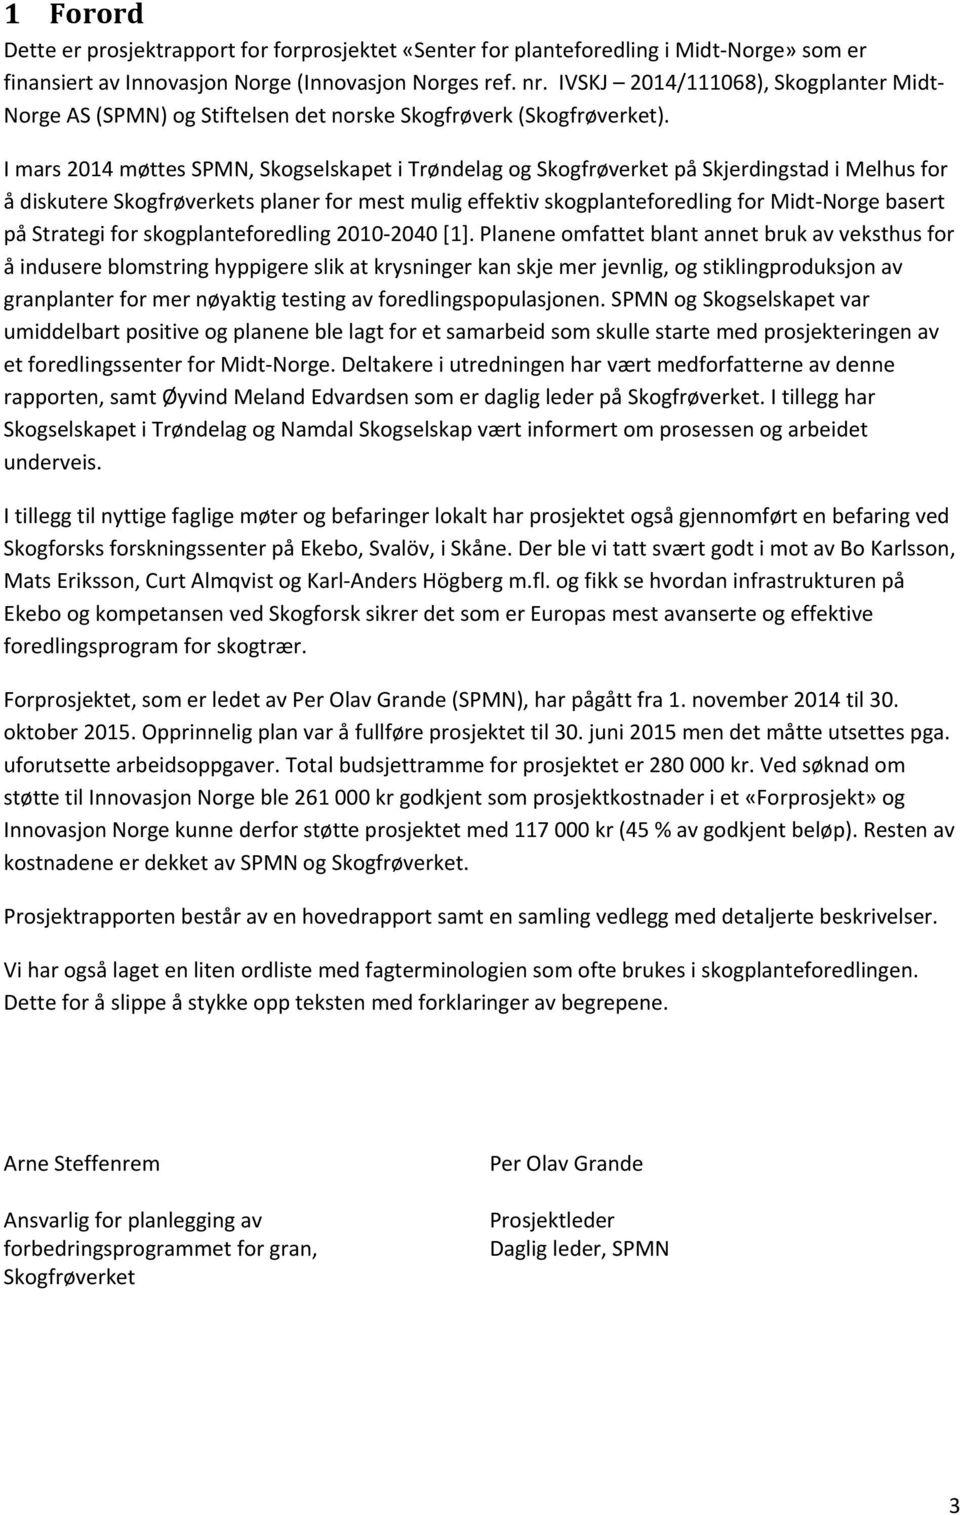 I mars 2014 møttes SPMN, Skogselskapet i Trøndelag og Skogfrøverket på Skjerdingstad i Melhus for å diskutere Skogfrøverkets planer for mest mulig effektiv skogplanteforedling for Midt Norge basert